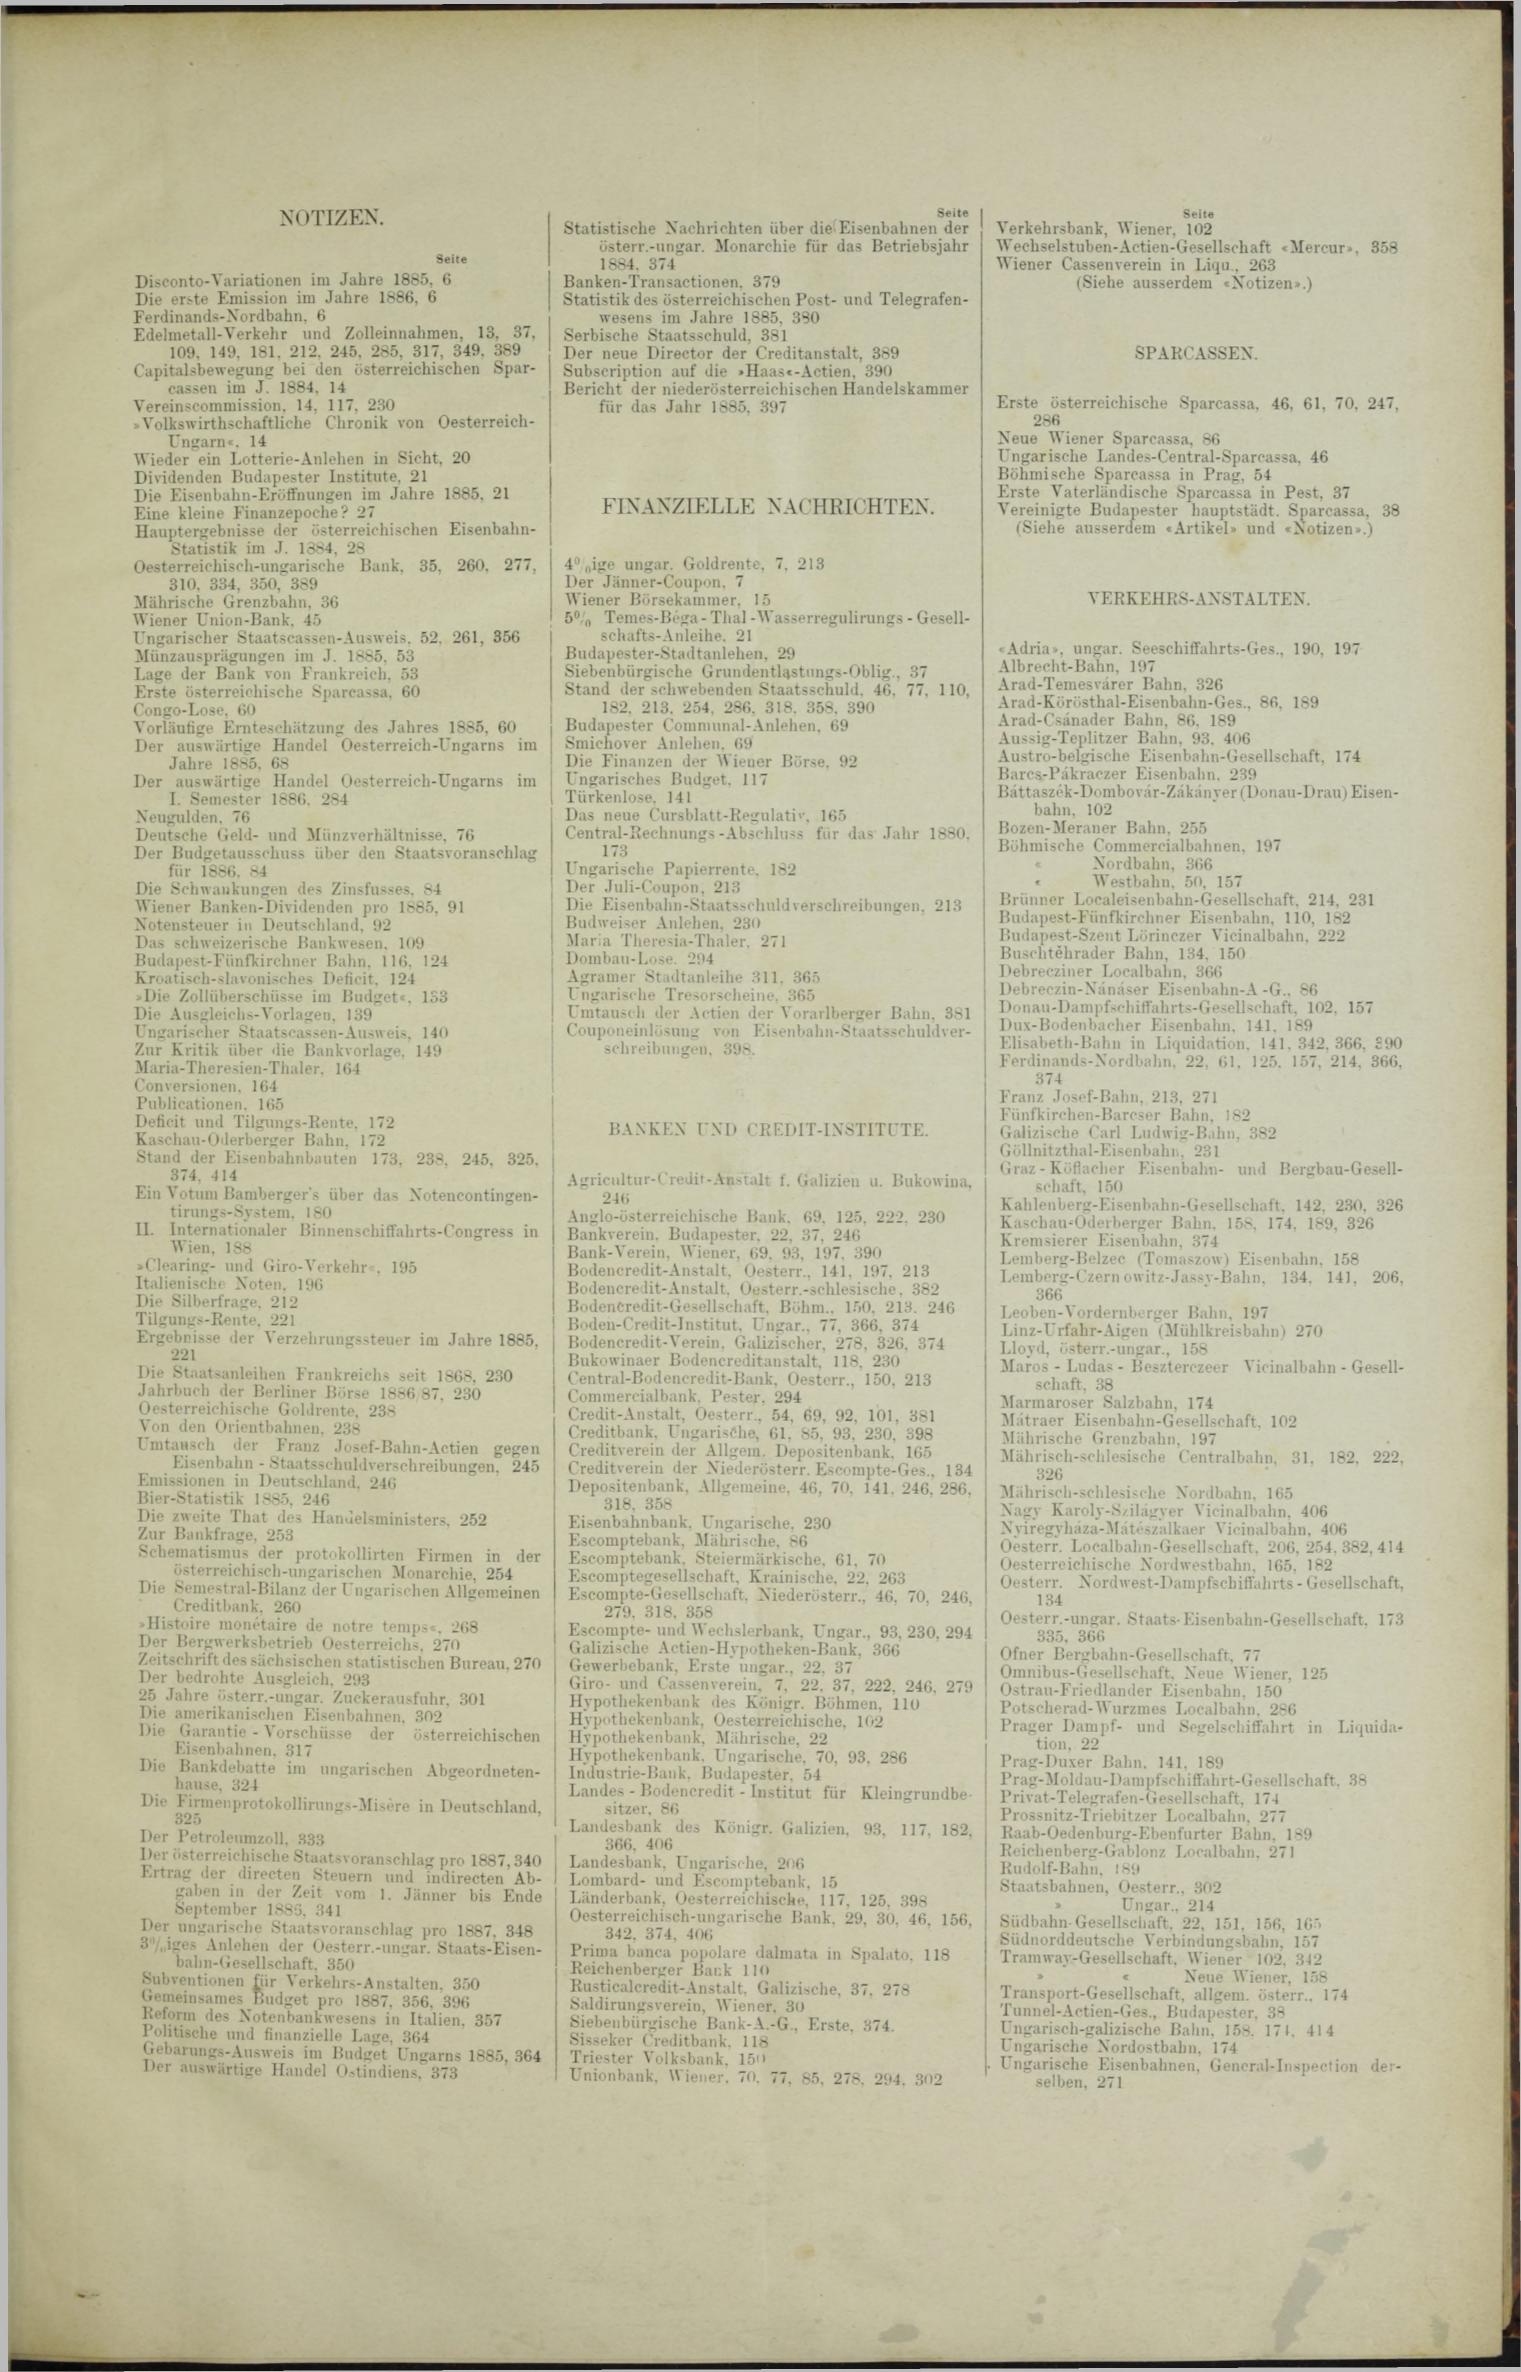 Der Tresor 16.12.1886 - Seite 11